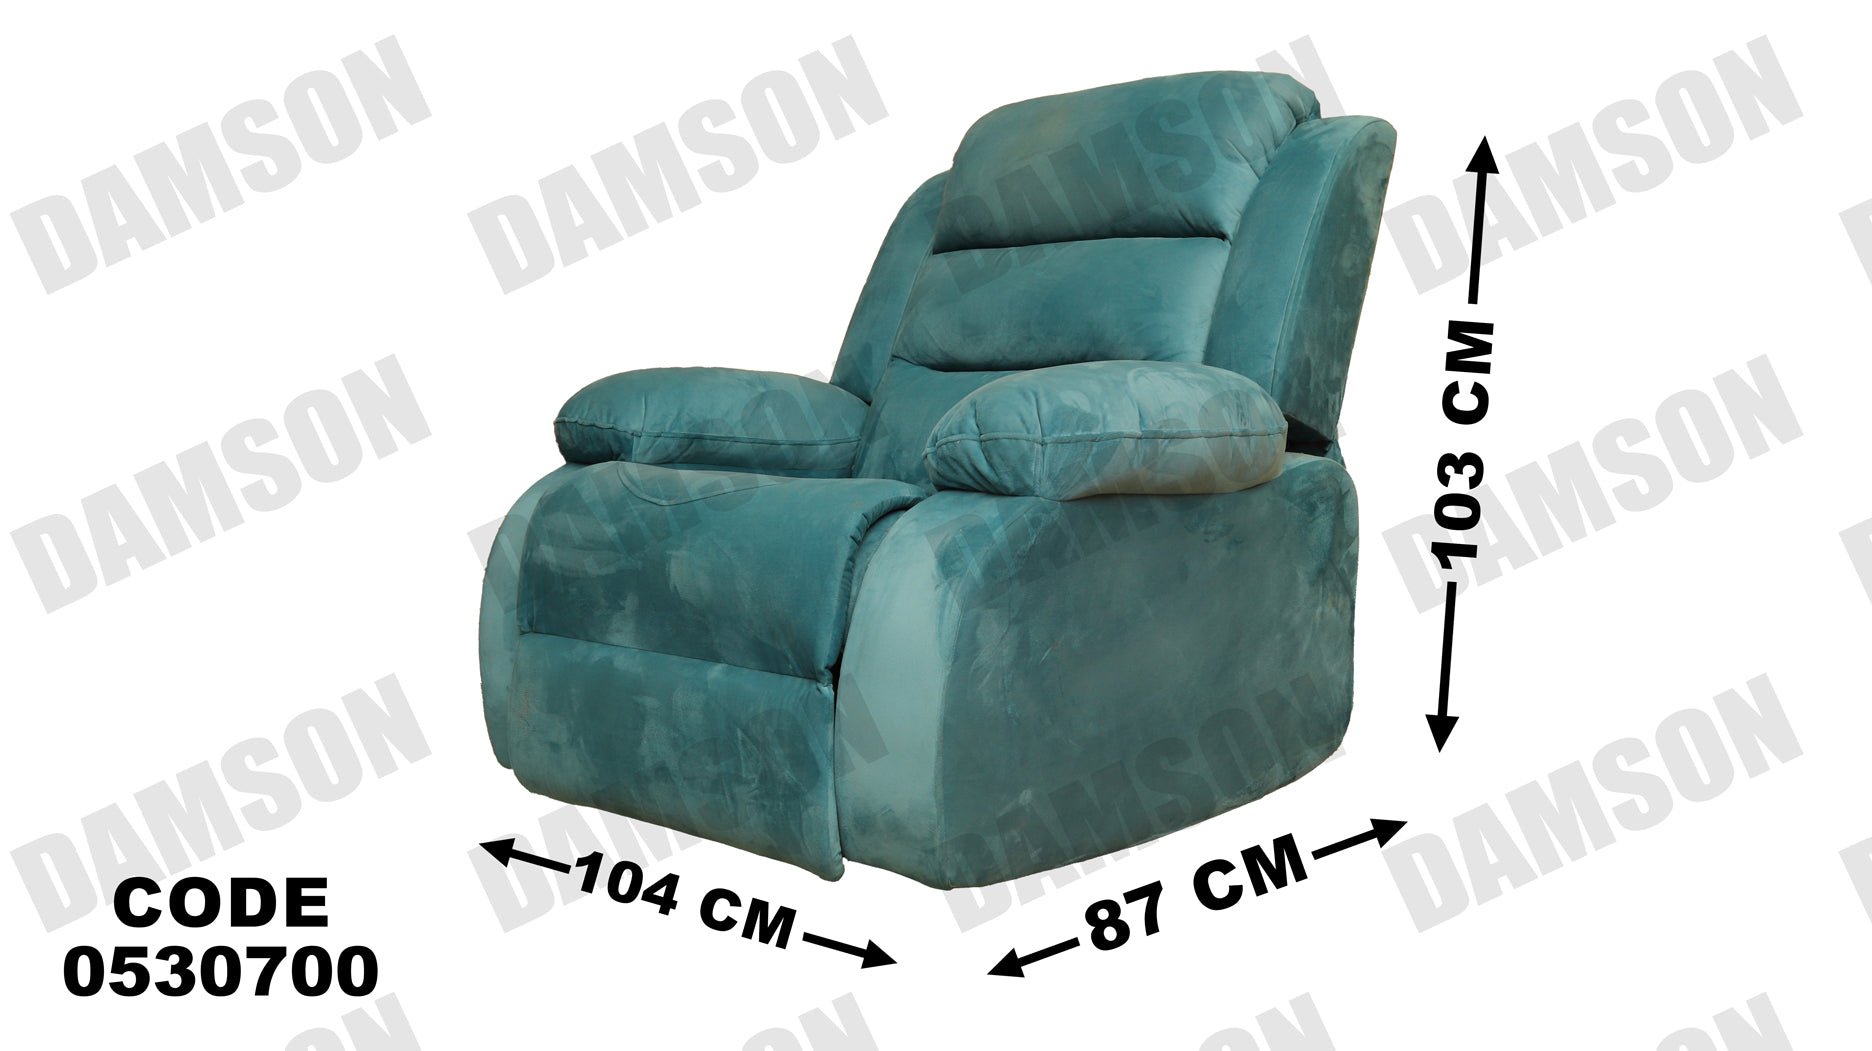 انترية ريكلاينر 307 - Damson Furnitureانترية ريكلاينر 307